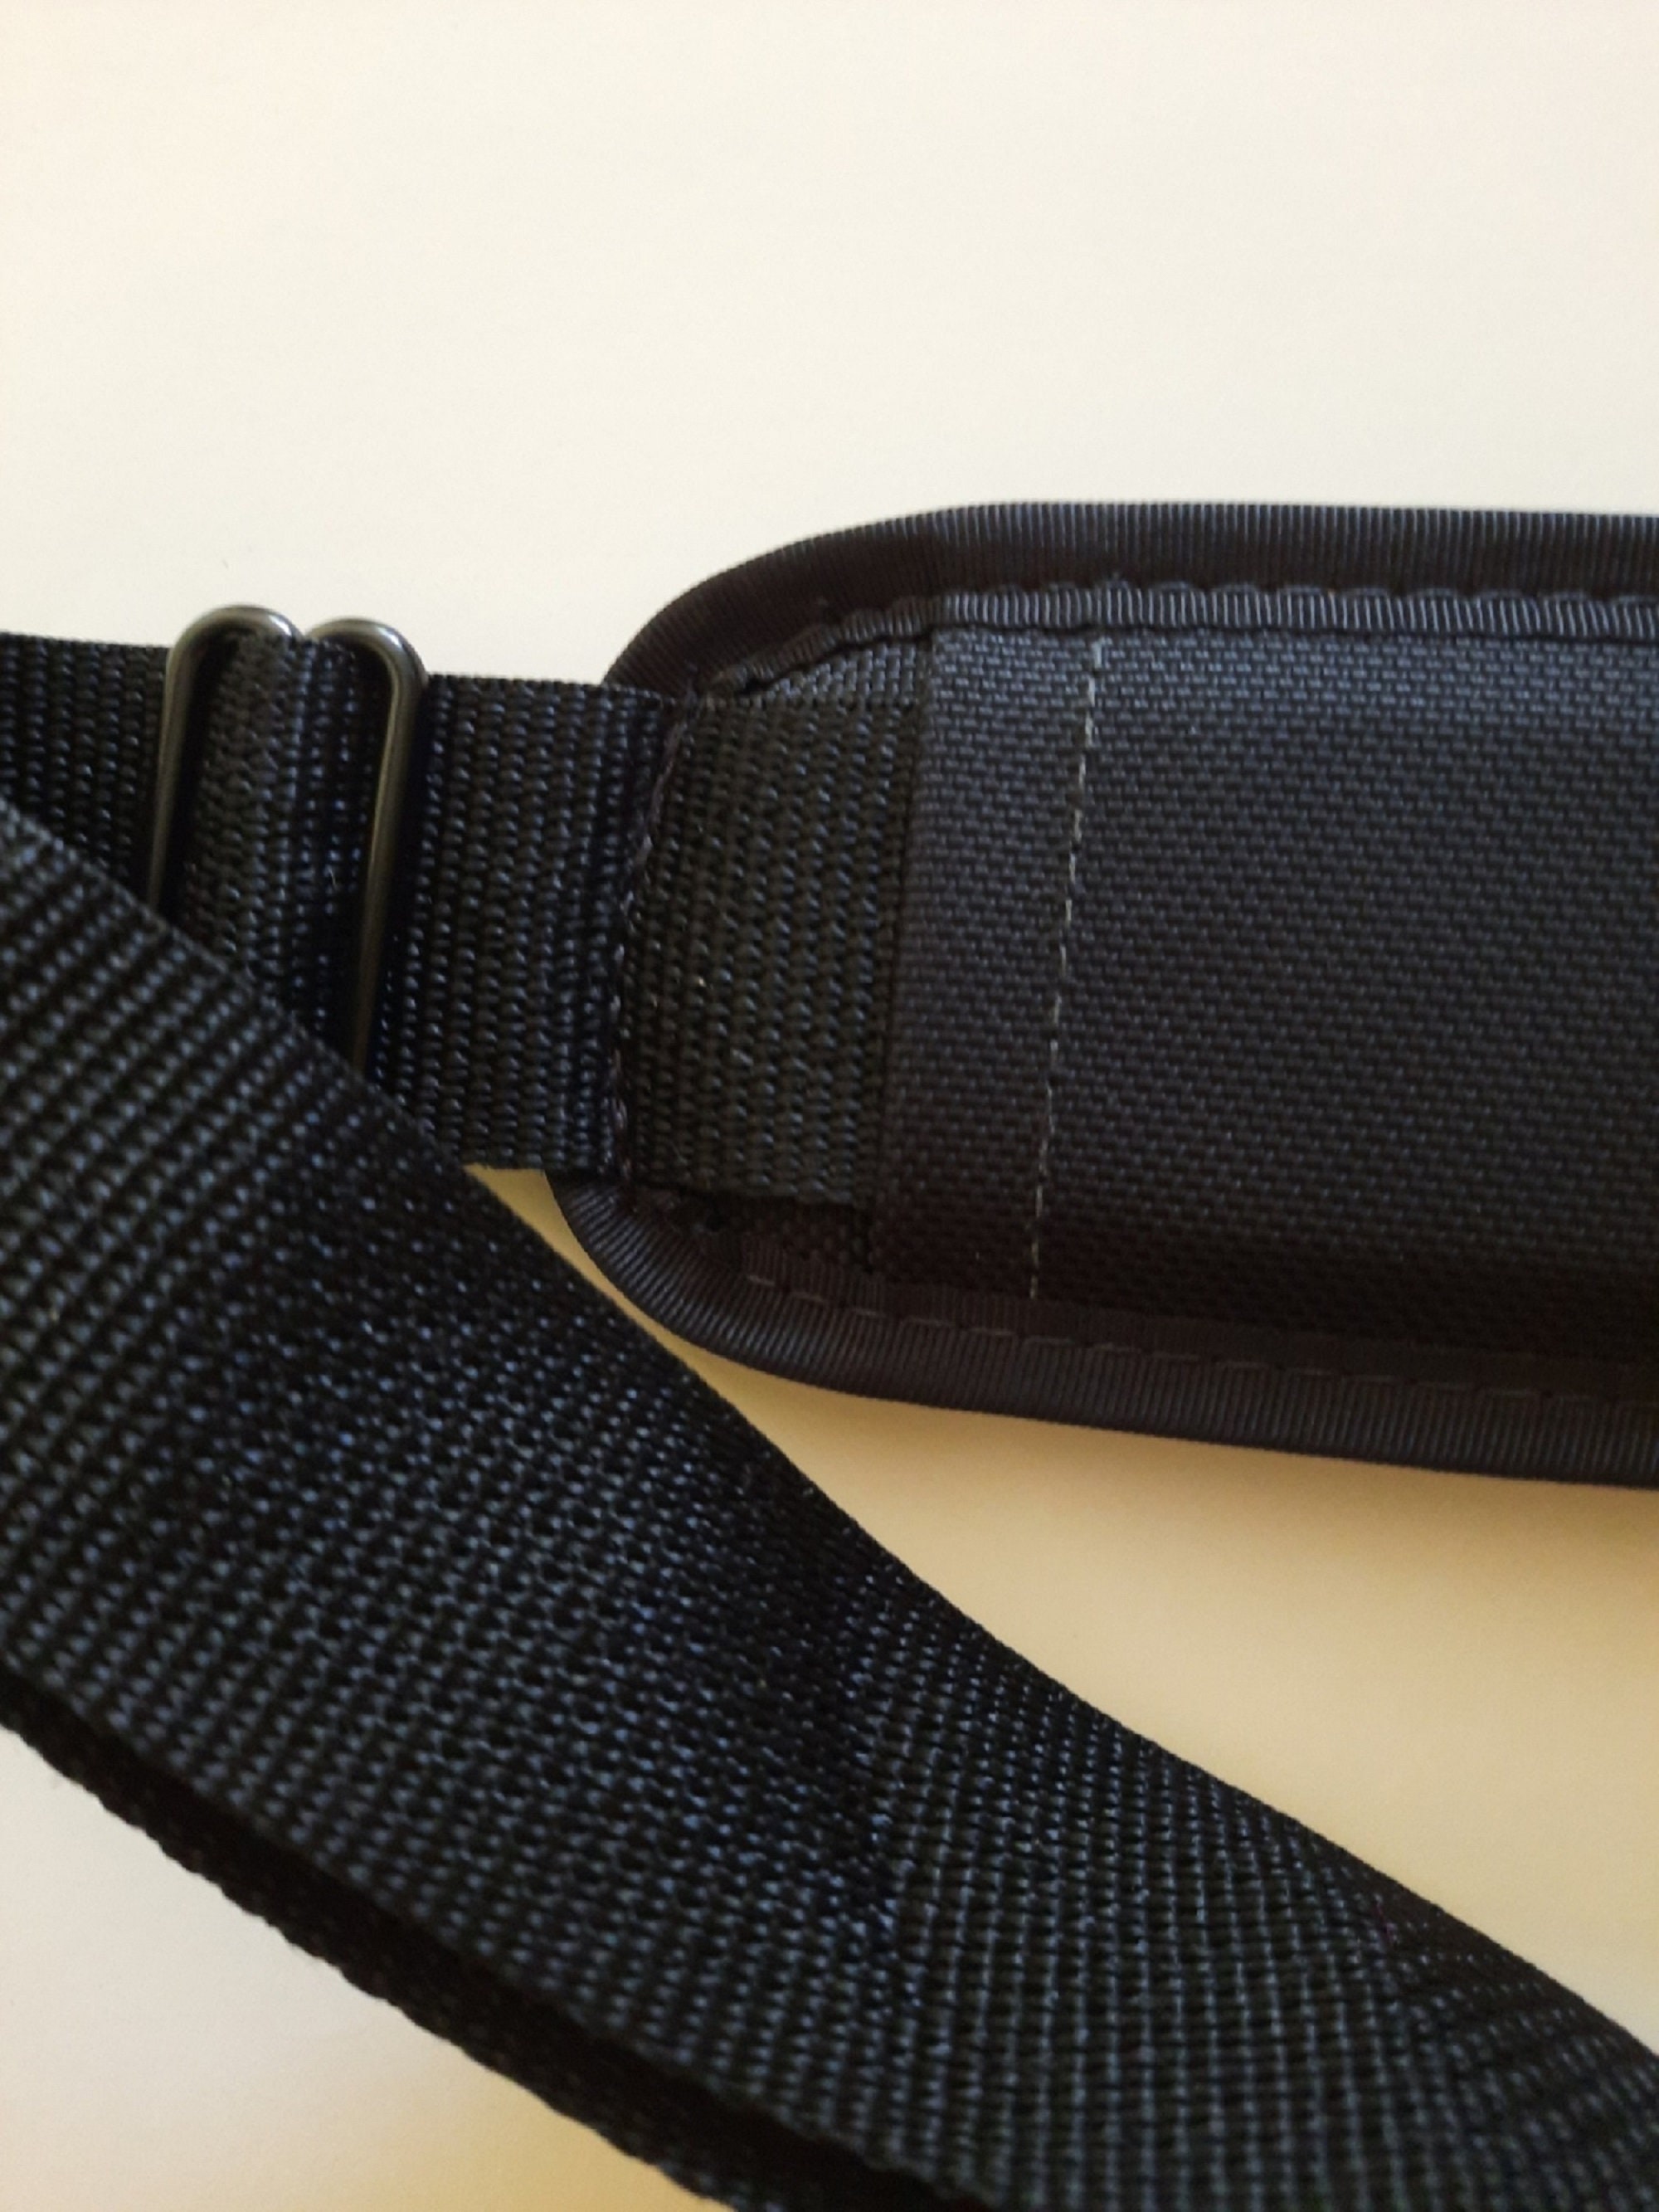 Widen4cm/1.6in Vachetta Leather Shoulder Strap for 